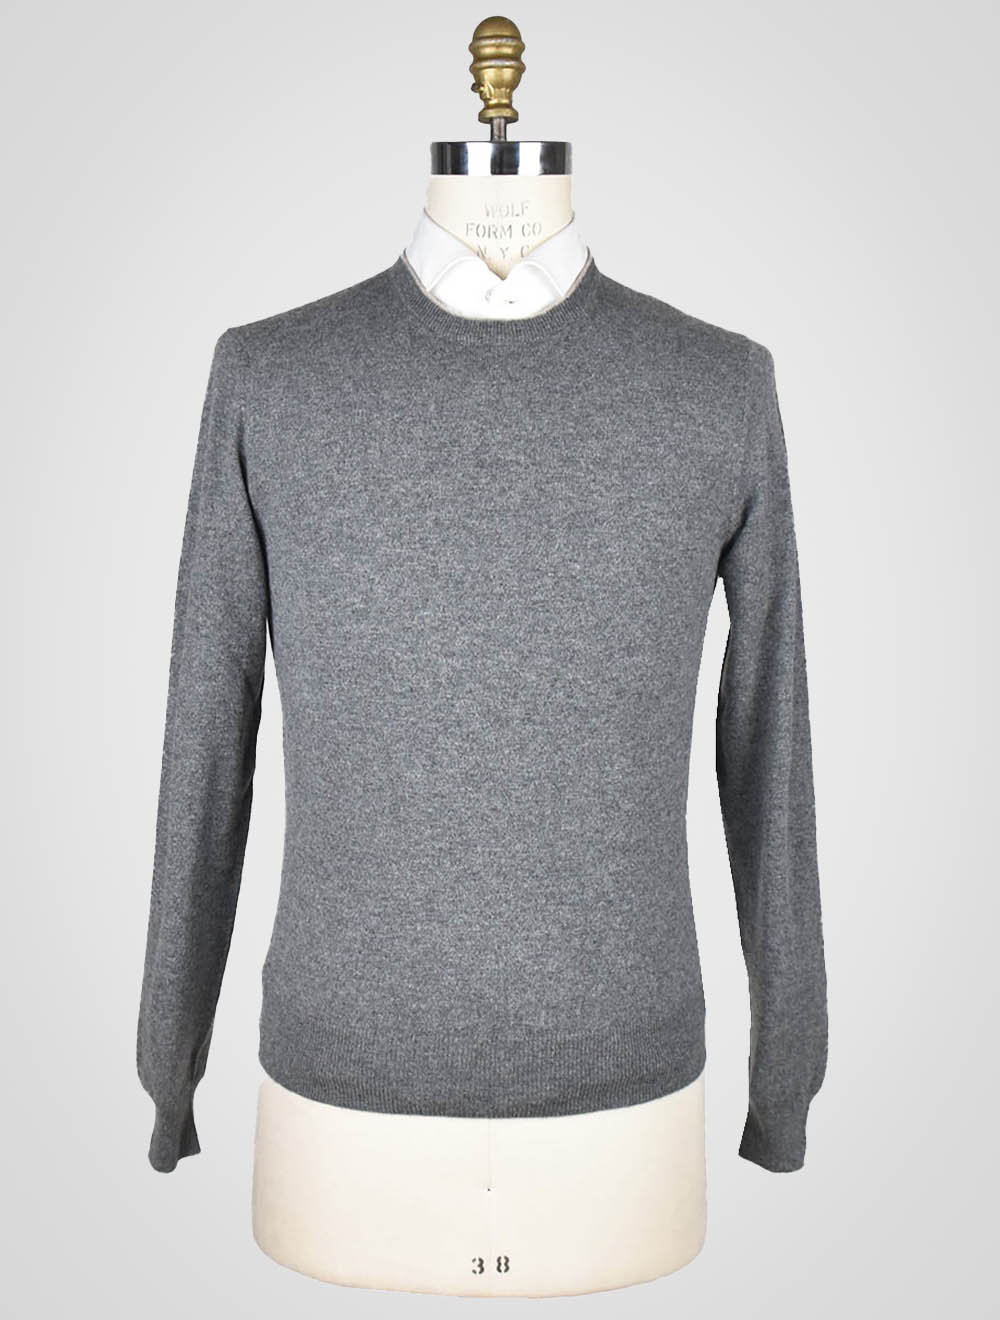 Серый кашемировый свитер Fioroni с круглым вырезом